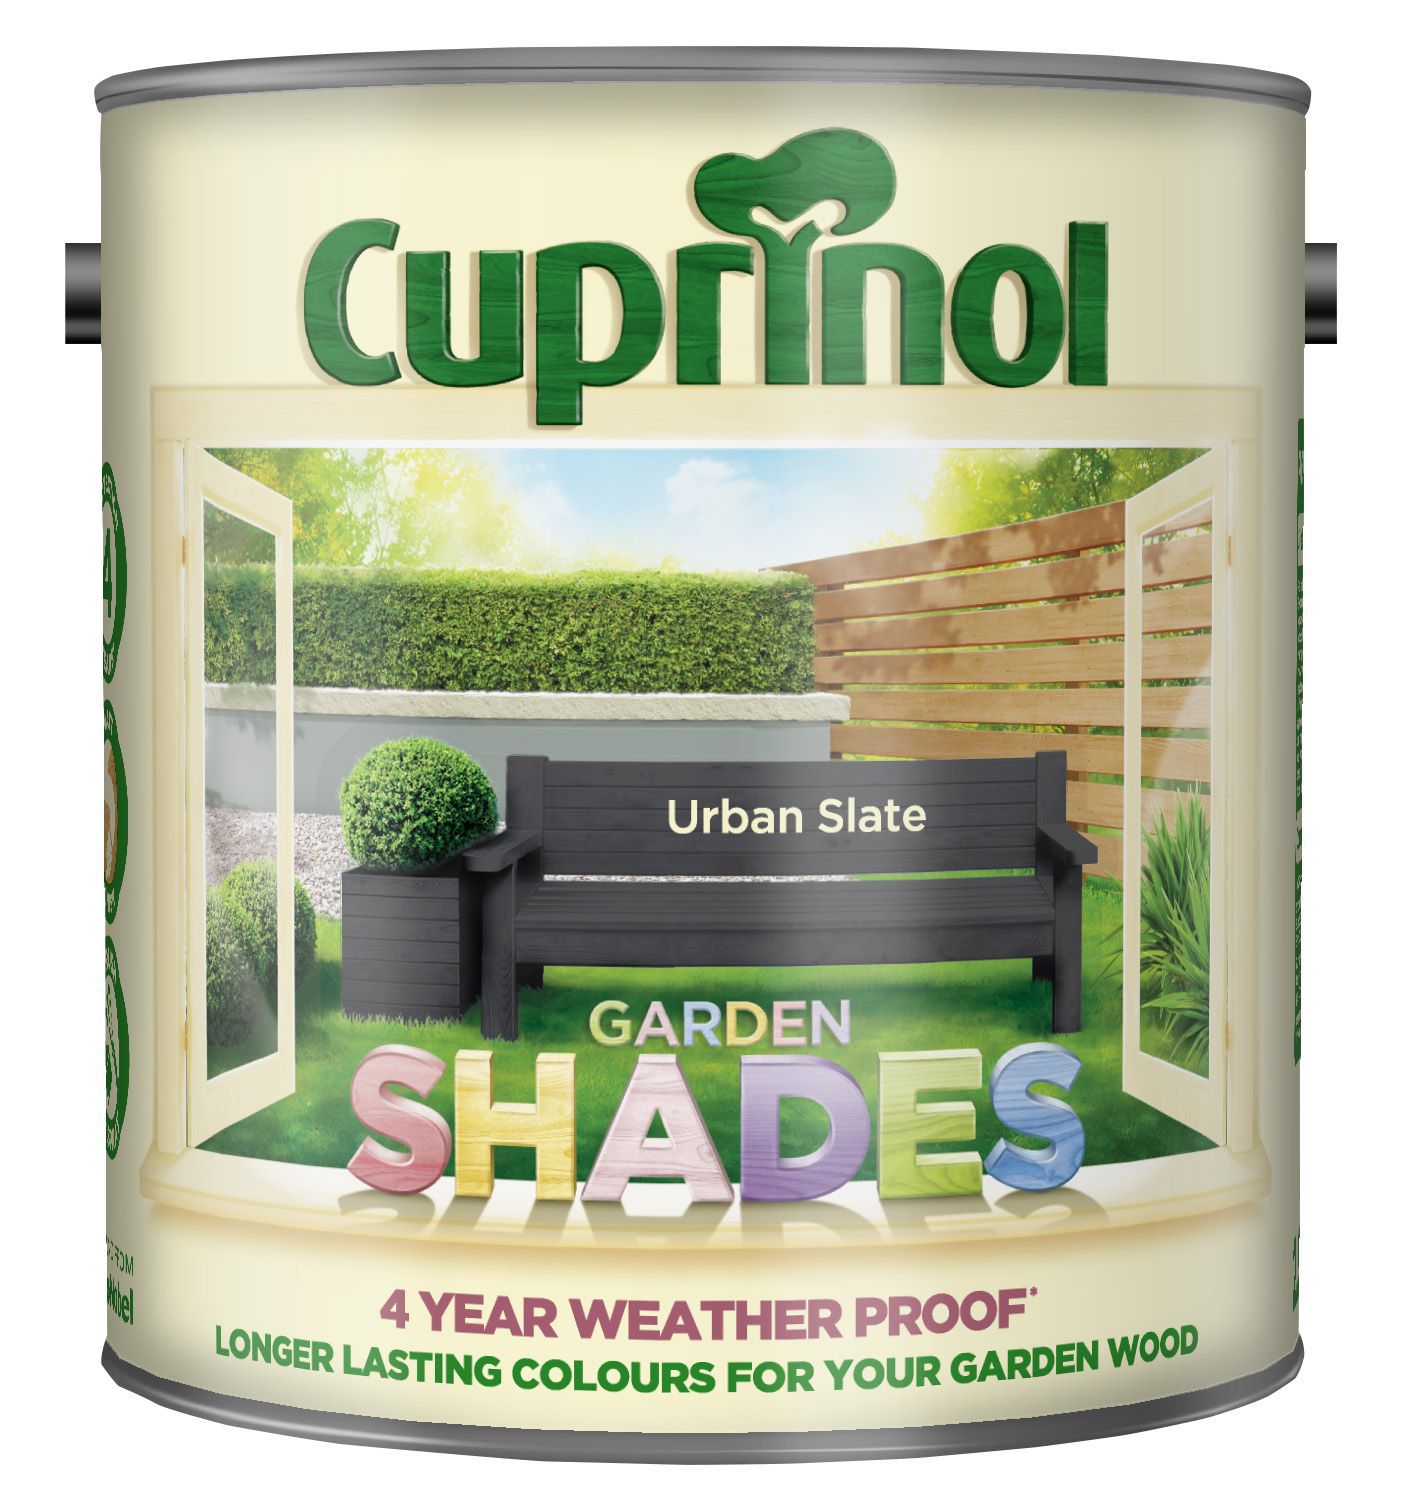 Cuprinol Garden shades Urban slate Matt Exterior Wood paint, 2.5L